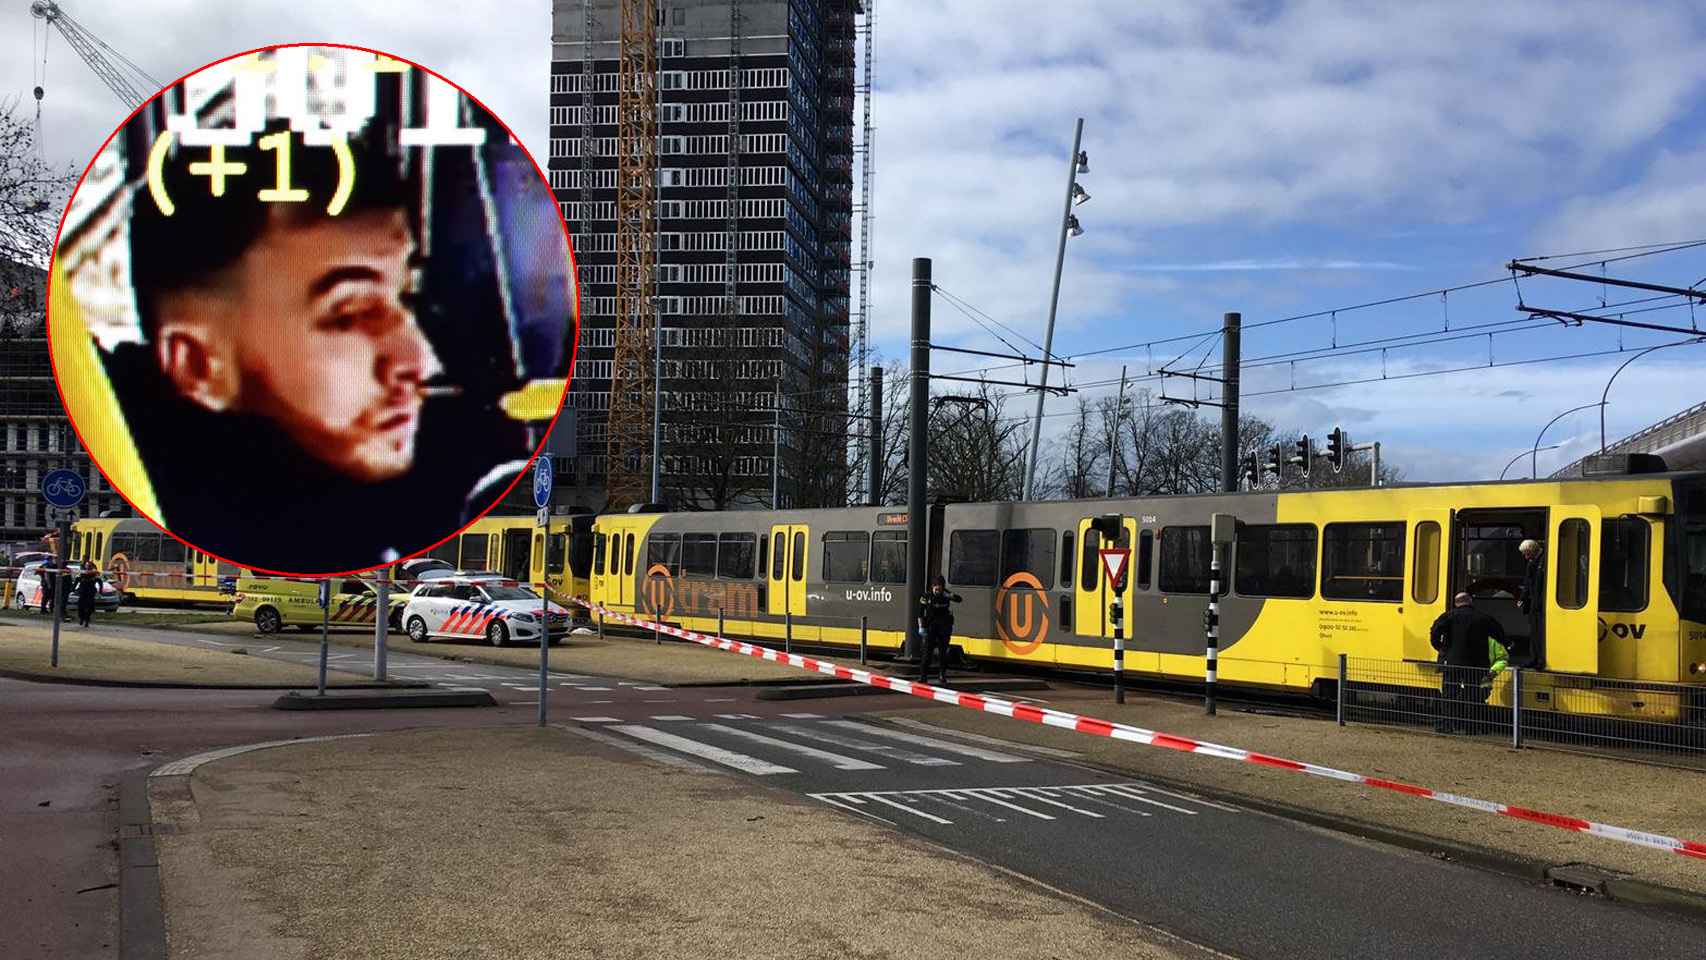 El atentado se ha producido en uno de los tranvías de la ciudad holandesa